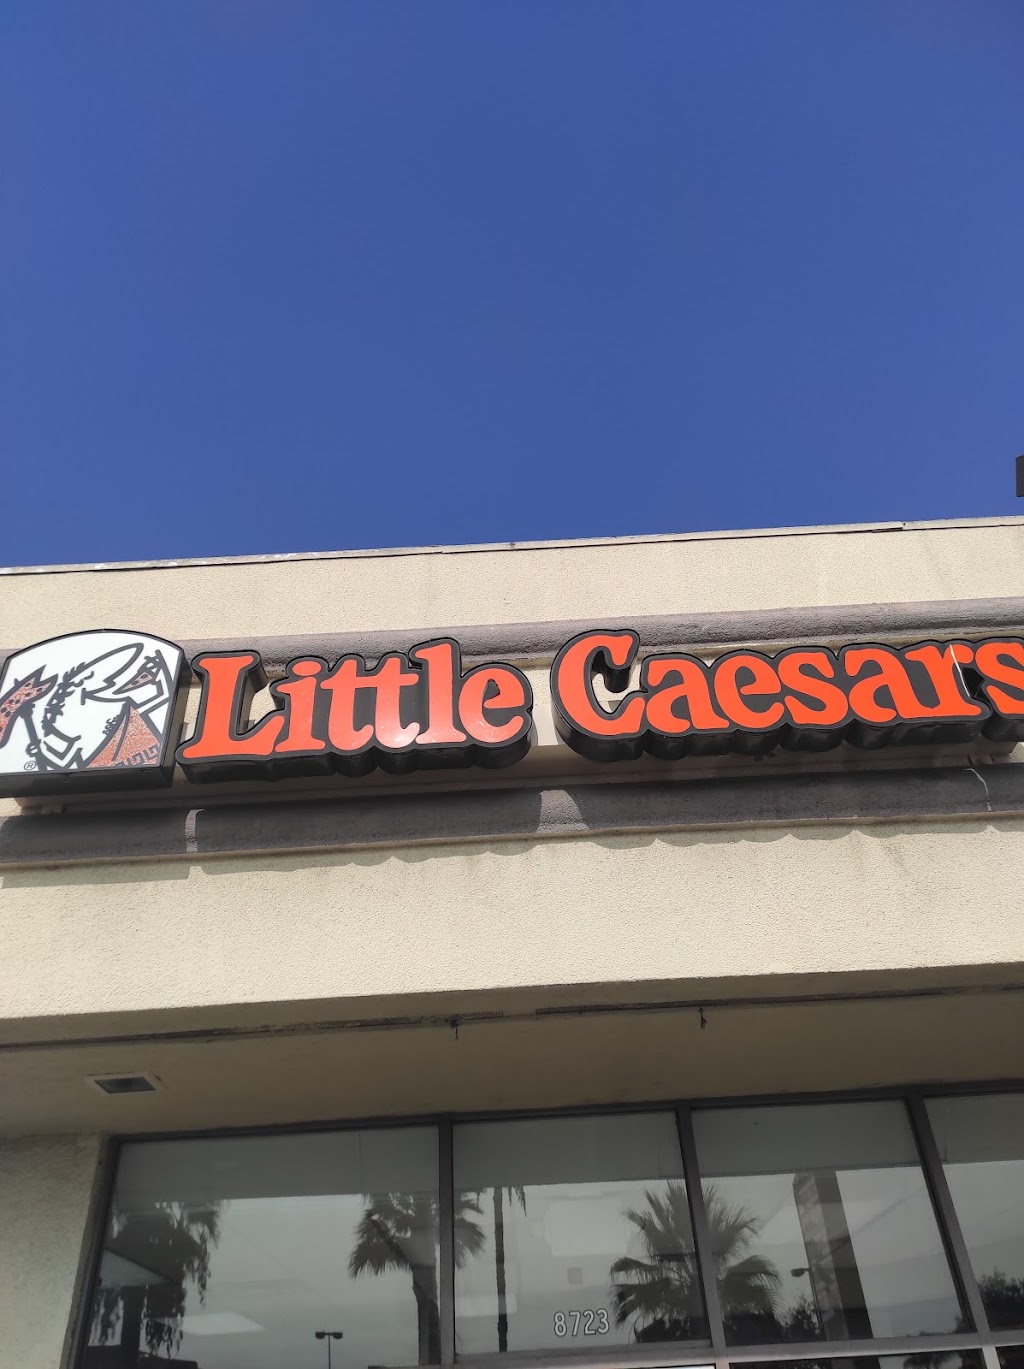 Little Caesars Pizza | 8723 Whittier Blvd, Pico Rivera, CA 90660 | Phone: (562) 699-4061